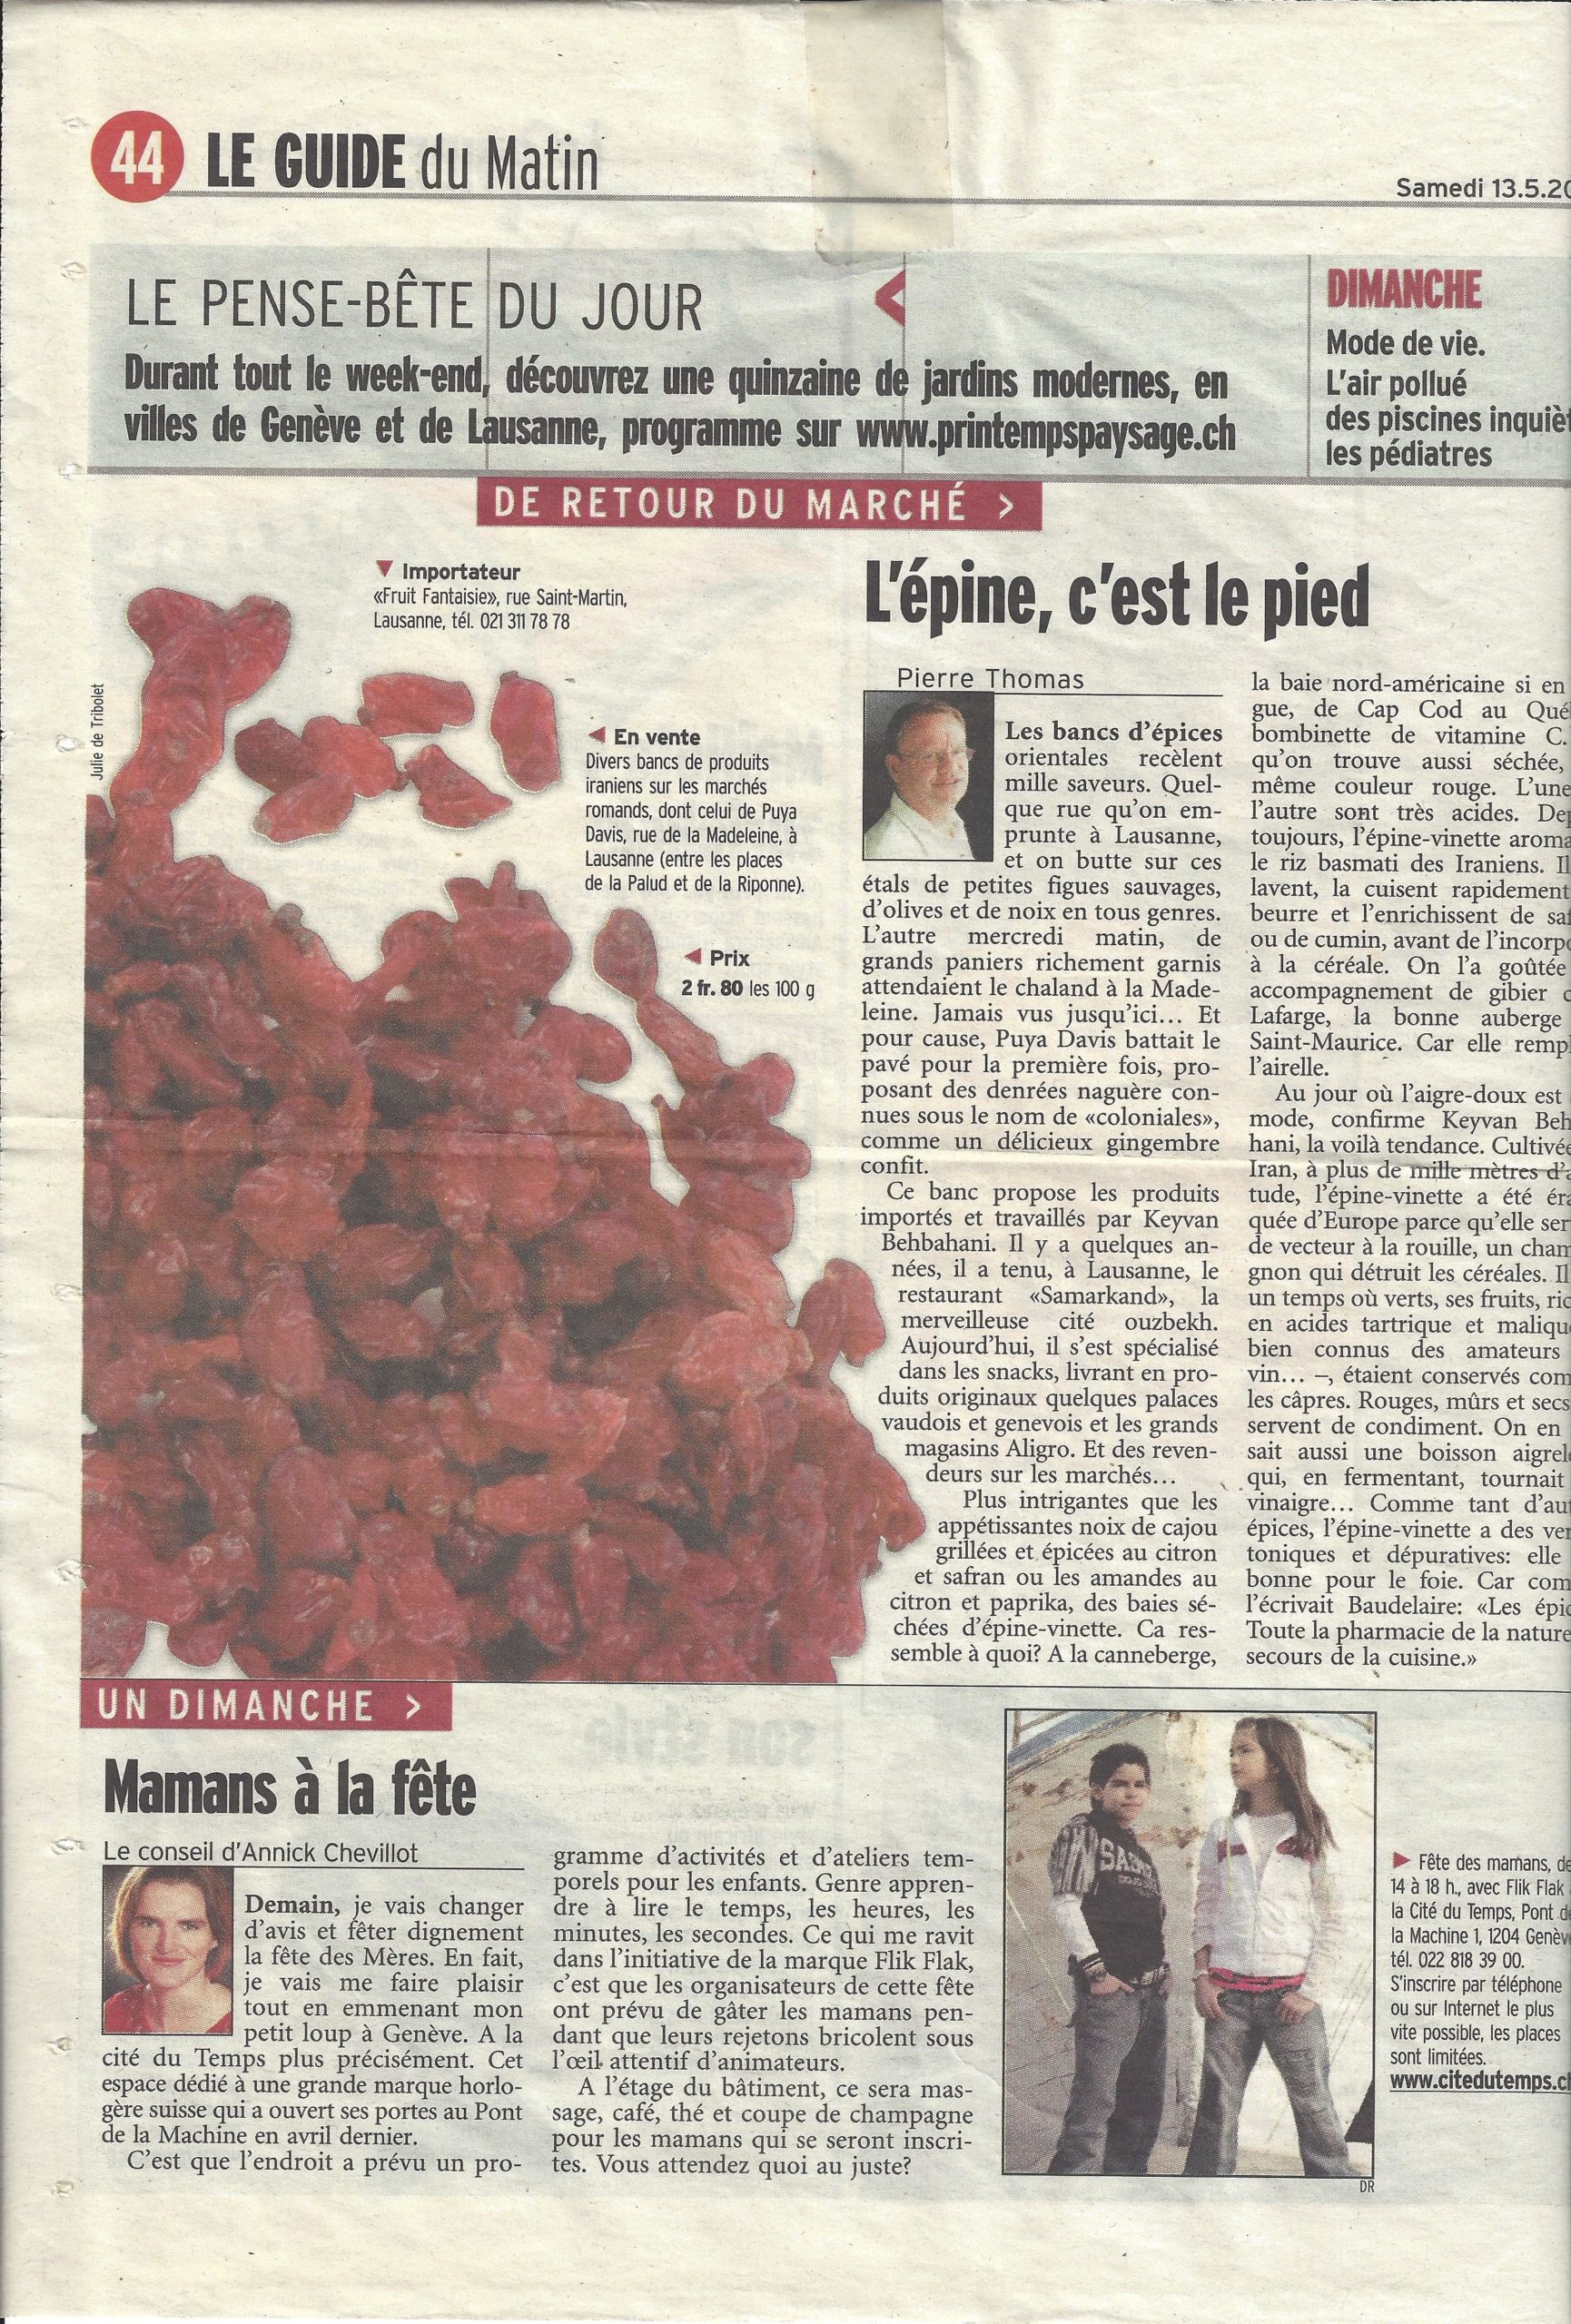 Le Guide du Matin samedi 13.05.2006